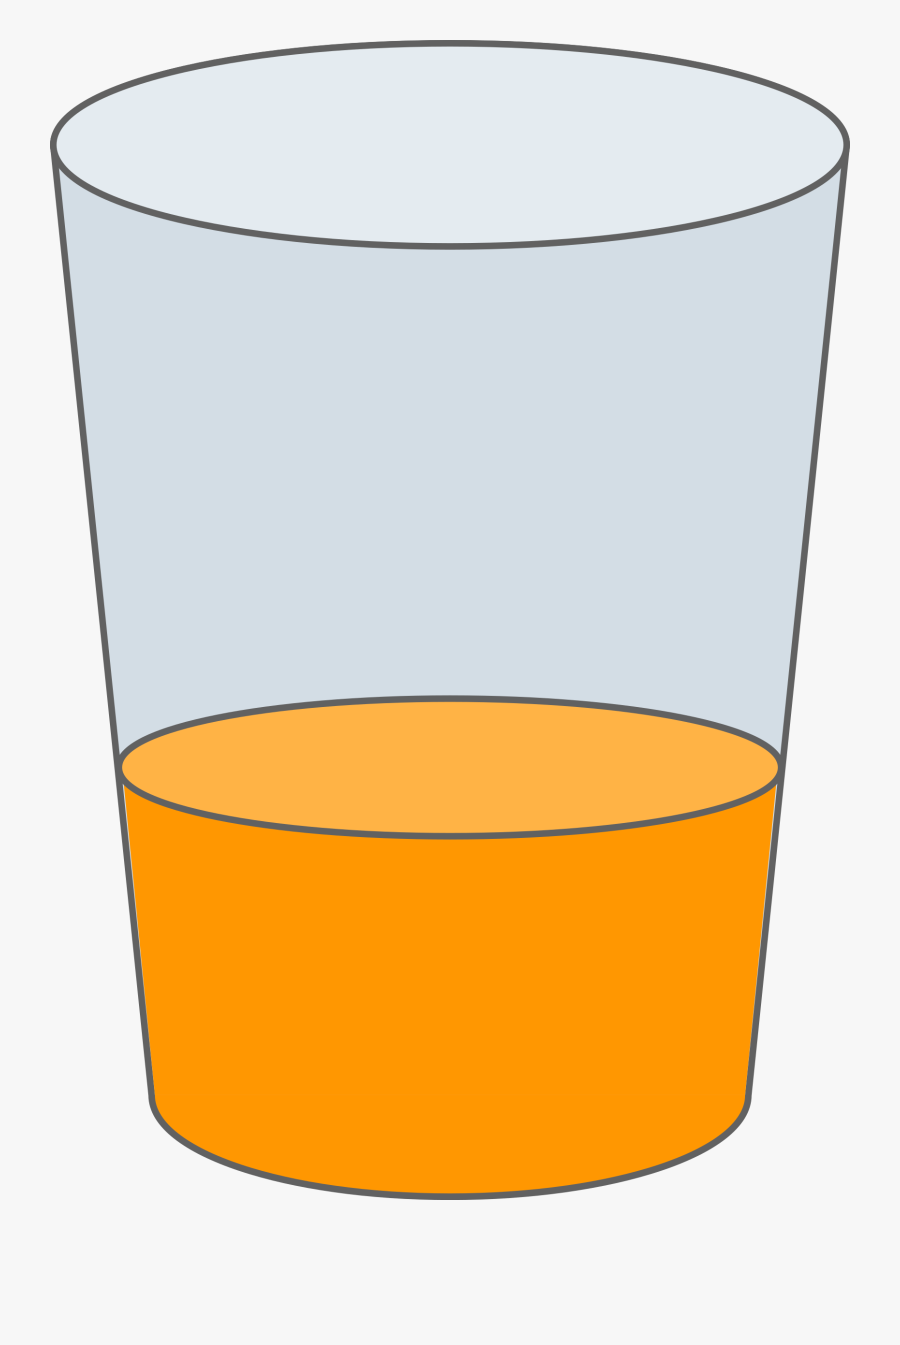 Oranje Juice Glass Svg - Little Juice In Glass, Transparent Clipart